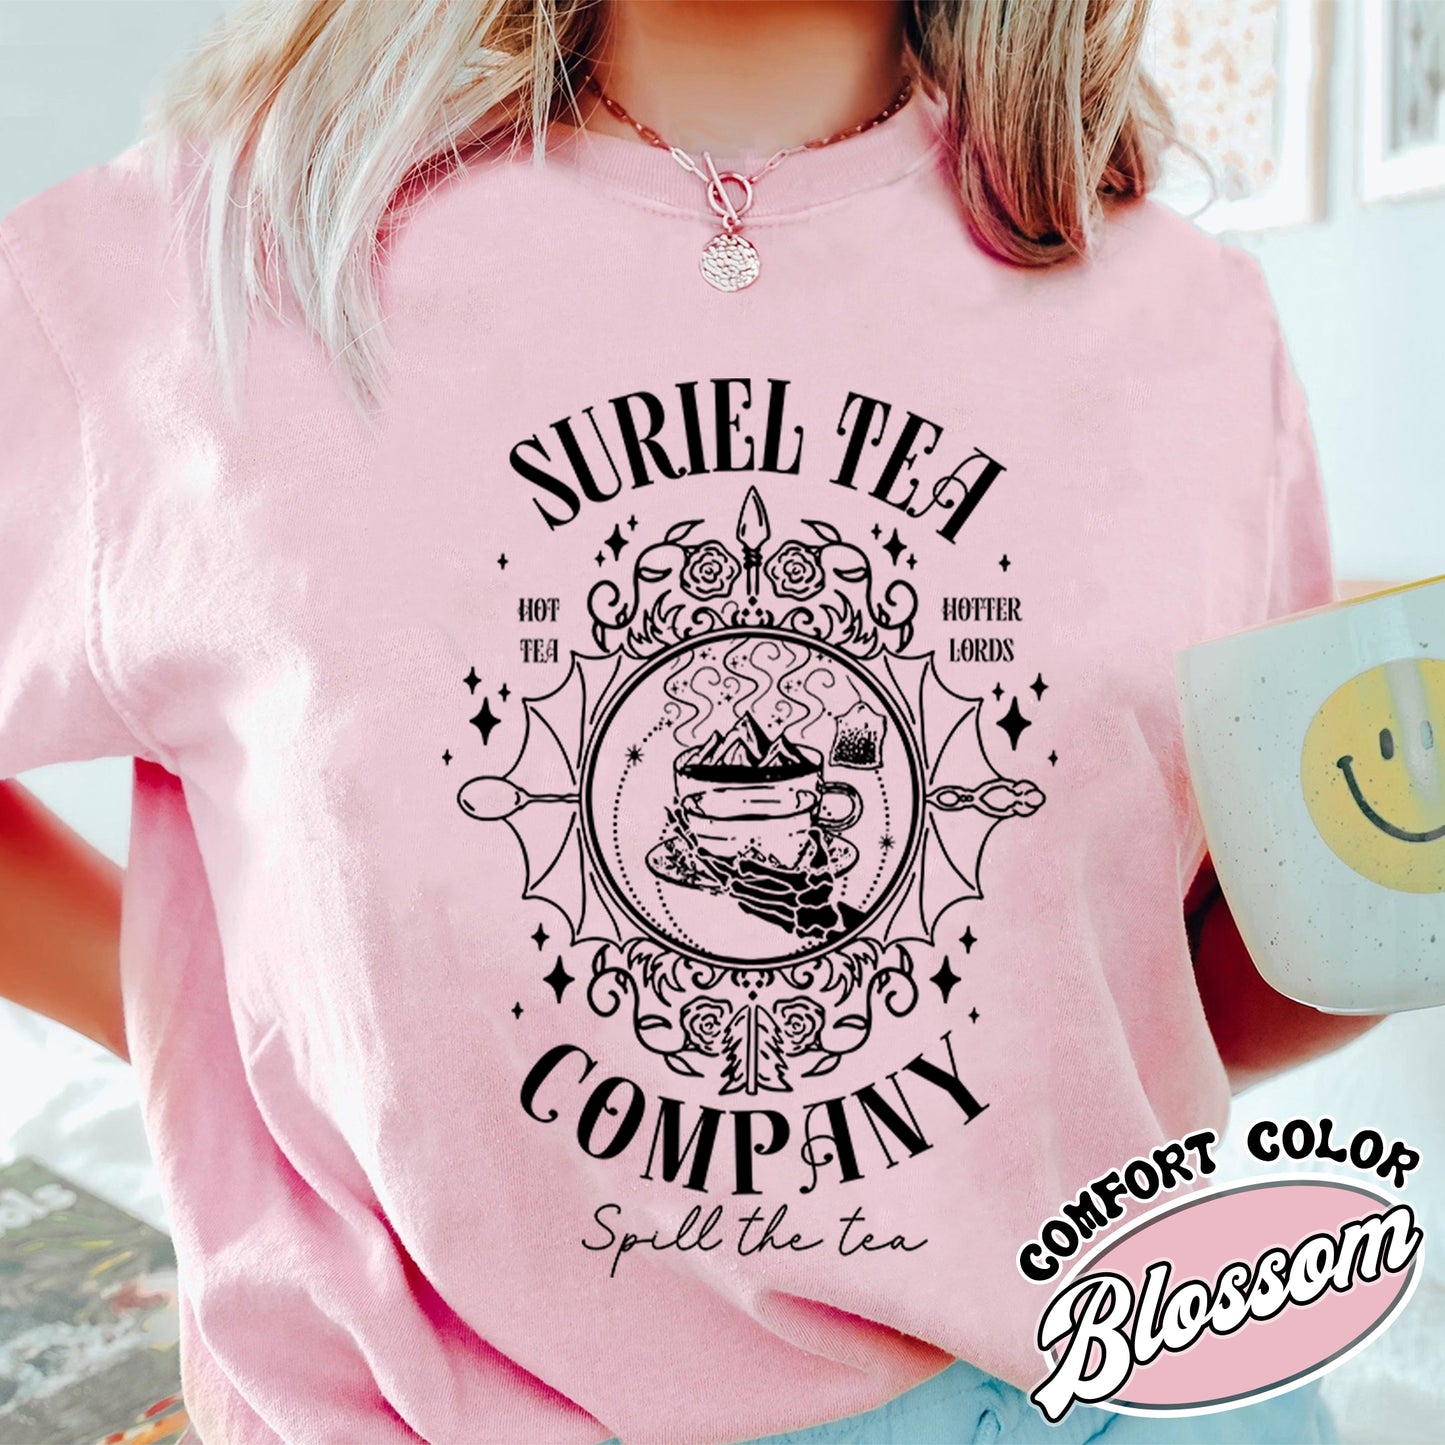 Suriel Tea Co Comfort Colors Shirt, Suriel Tea Co Tshirt, Suriel Tea Co Shirt, Acotar Shirt Suriel Tea Co, Suriel Tea Co Shirt, Bookish Gift